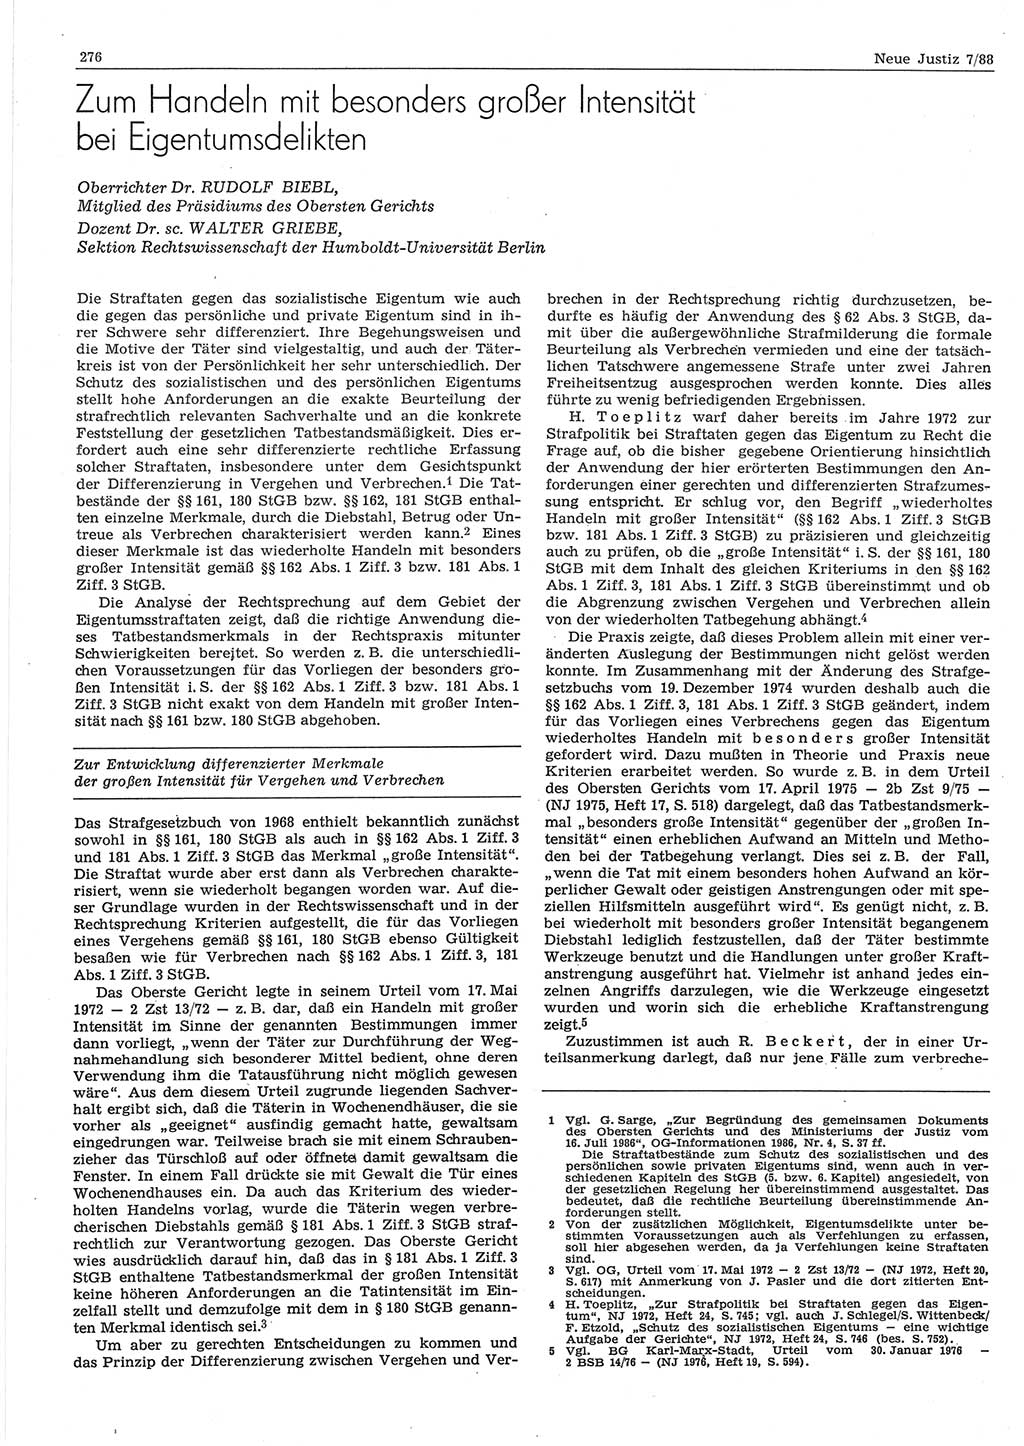 Neue Justiz (NJ), Zeitschrift für sozialistisches Recht und Gesetzlichkeit [Deutsche Demokratische Republik (DDR)], 42. Jahrgang 1988, Seite 276 (NJ DDR 1988, S. 276)